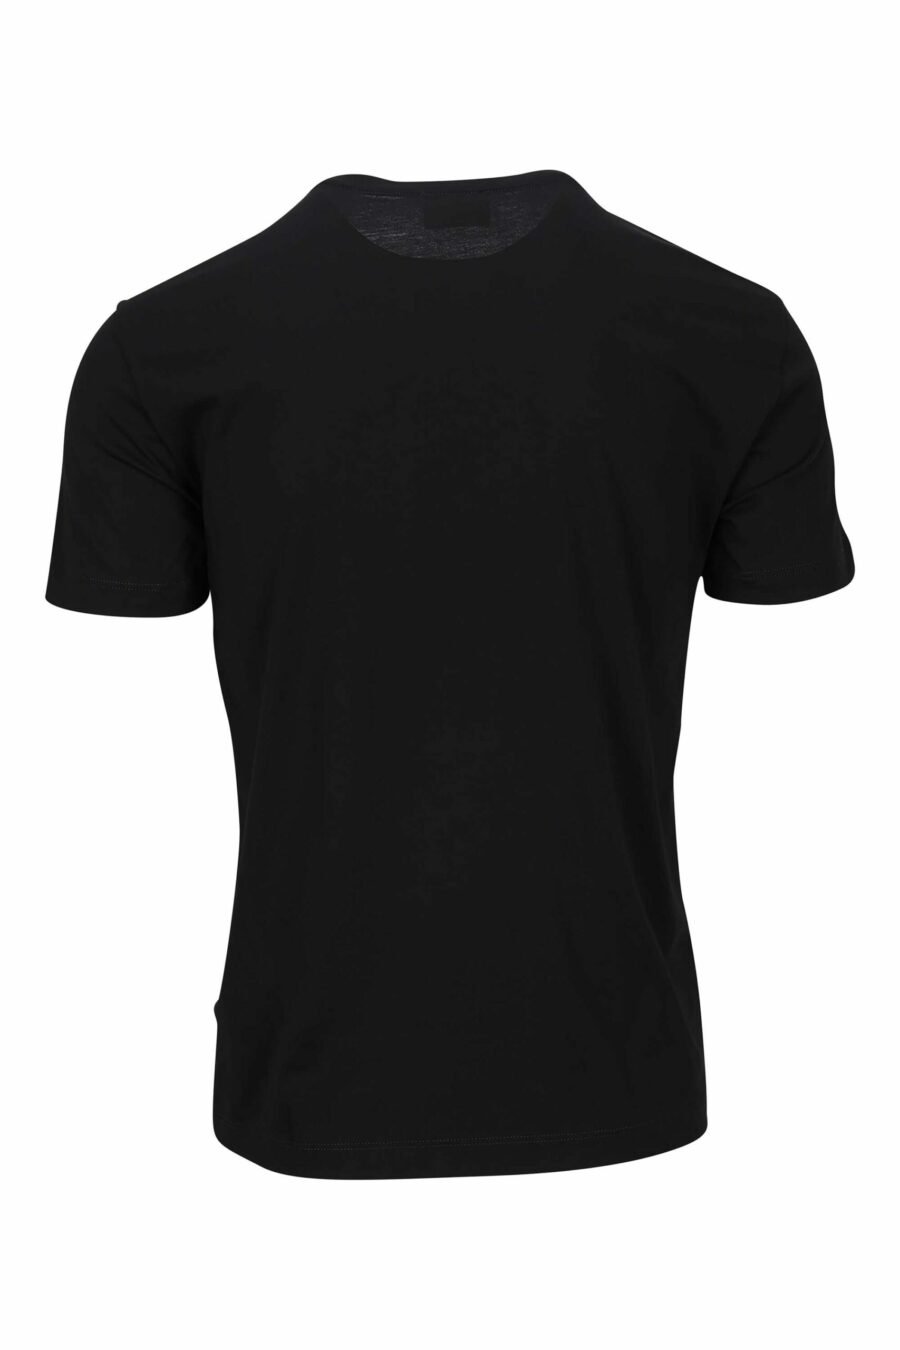 T-shirt preta com maxilogo dourado "lux identity" - 8056787951167 1 scaled